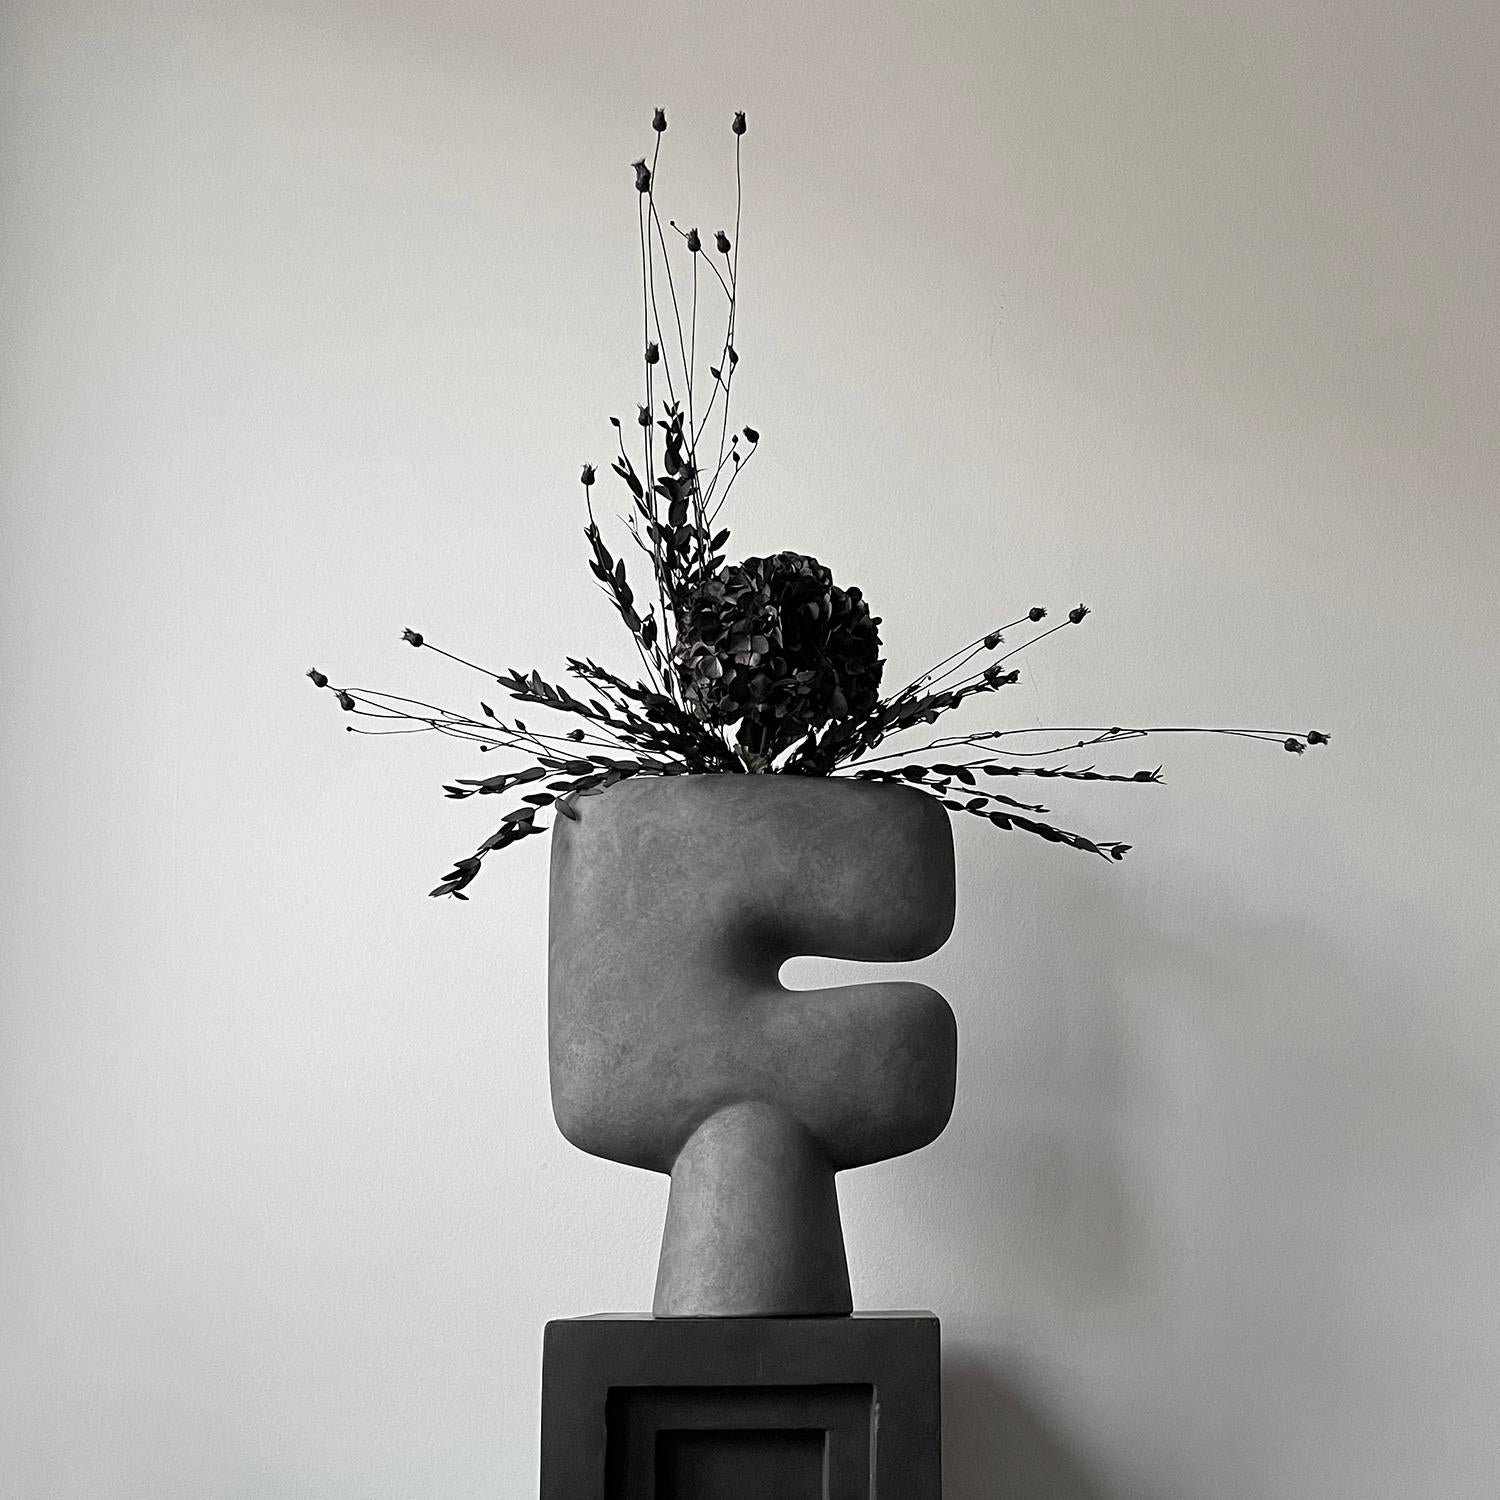 Un ensemble de 2 vases gris foncé Tribal big par 101 Copenhagen
Design/One : Kristian Sofus Hansen & Tommy Hyldahl
Dimensions : L 34 / L 14 / H 45 CM
Matériaux : Céramique

La collection Tribal est une série de vases conçus comme une interprétation